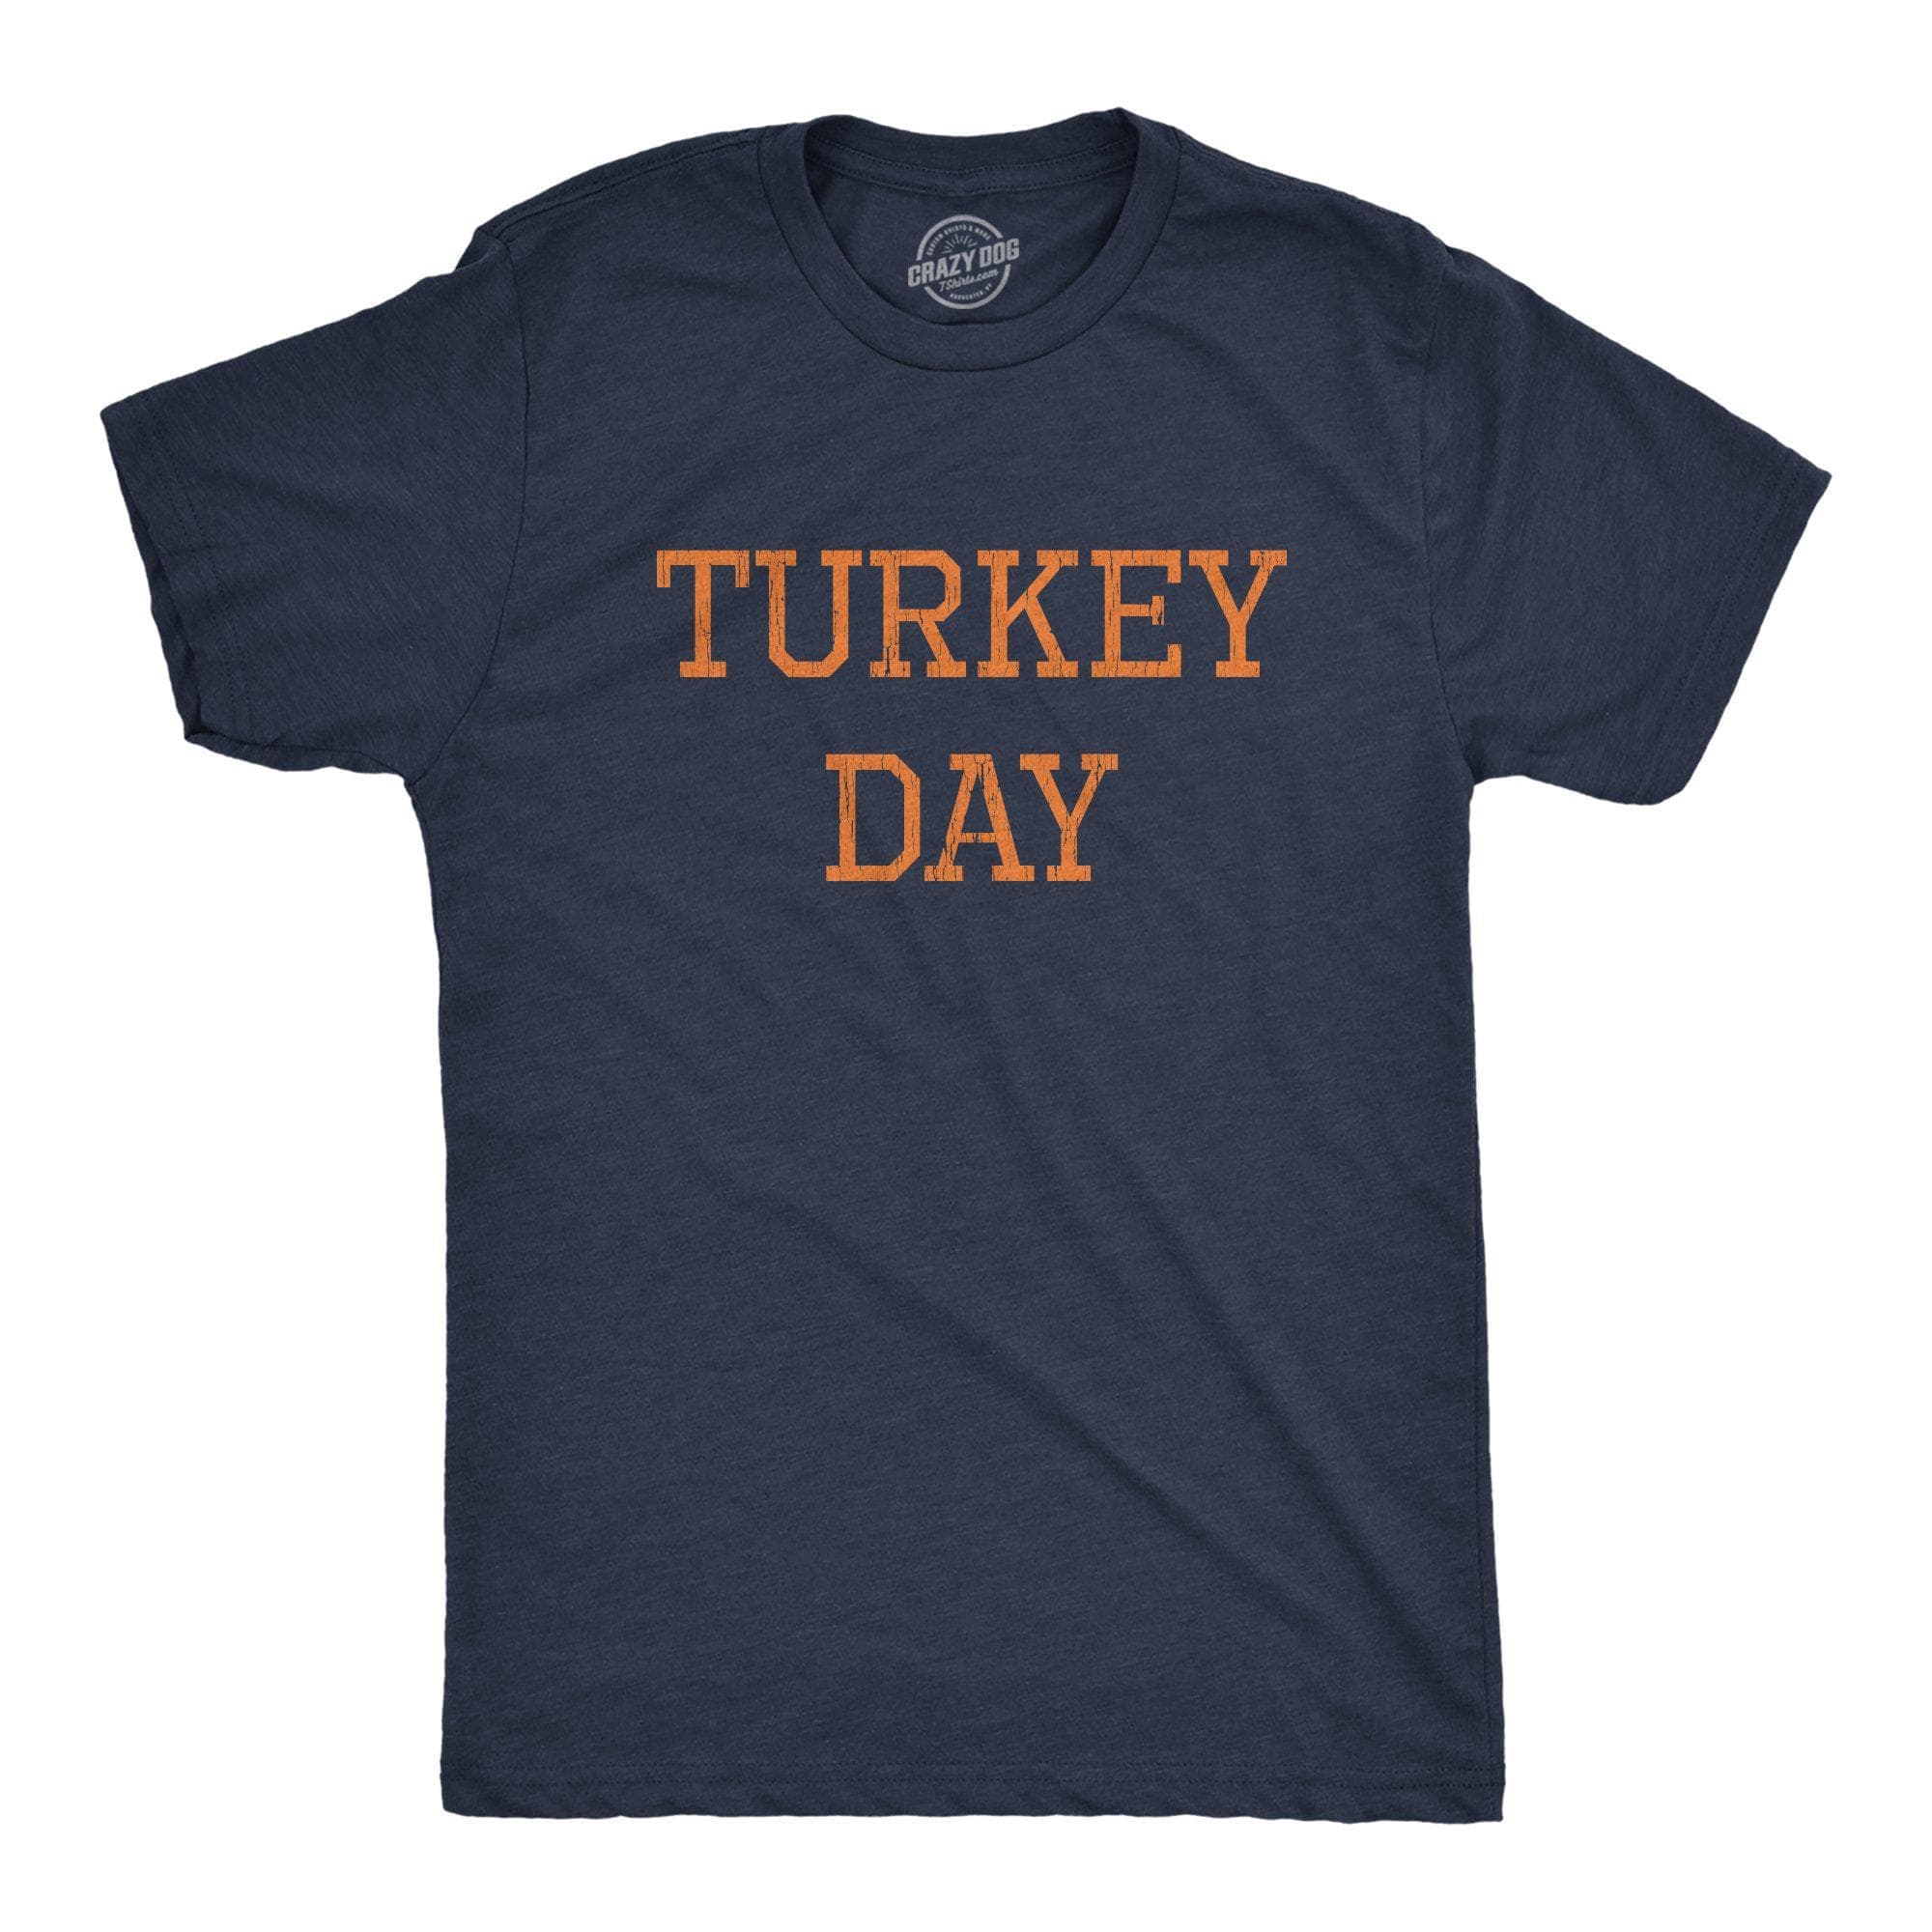 Turkey Day Men's Tshirt - Crazy Dog T-Shirts